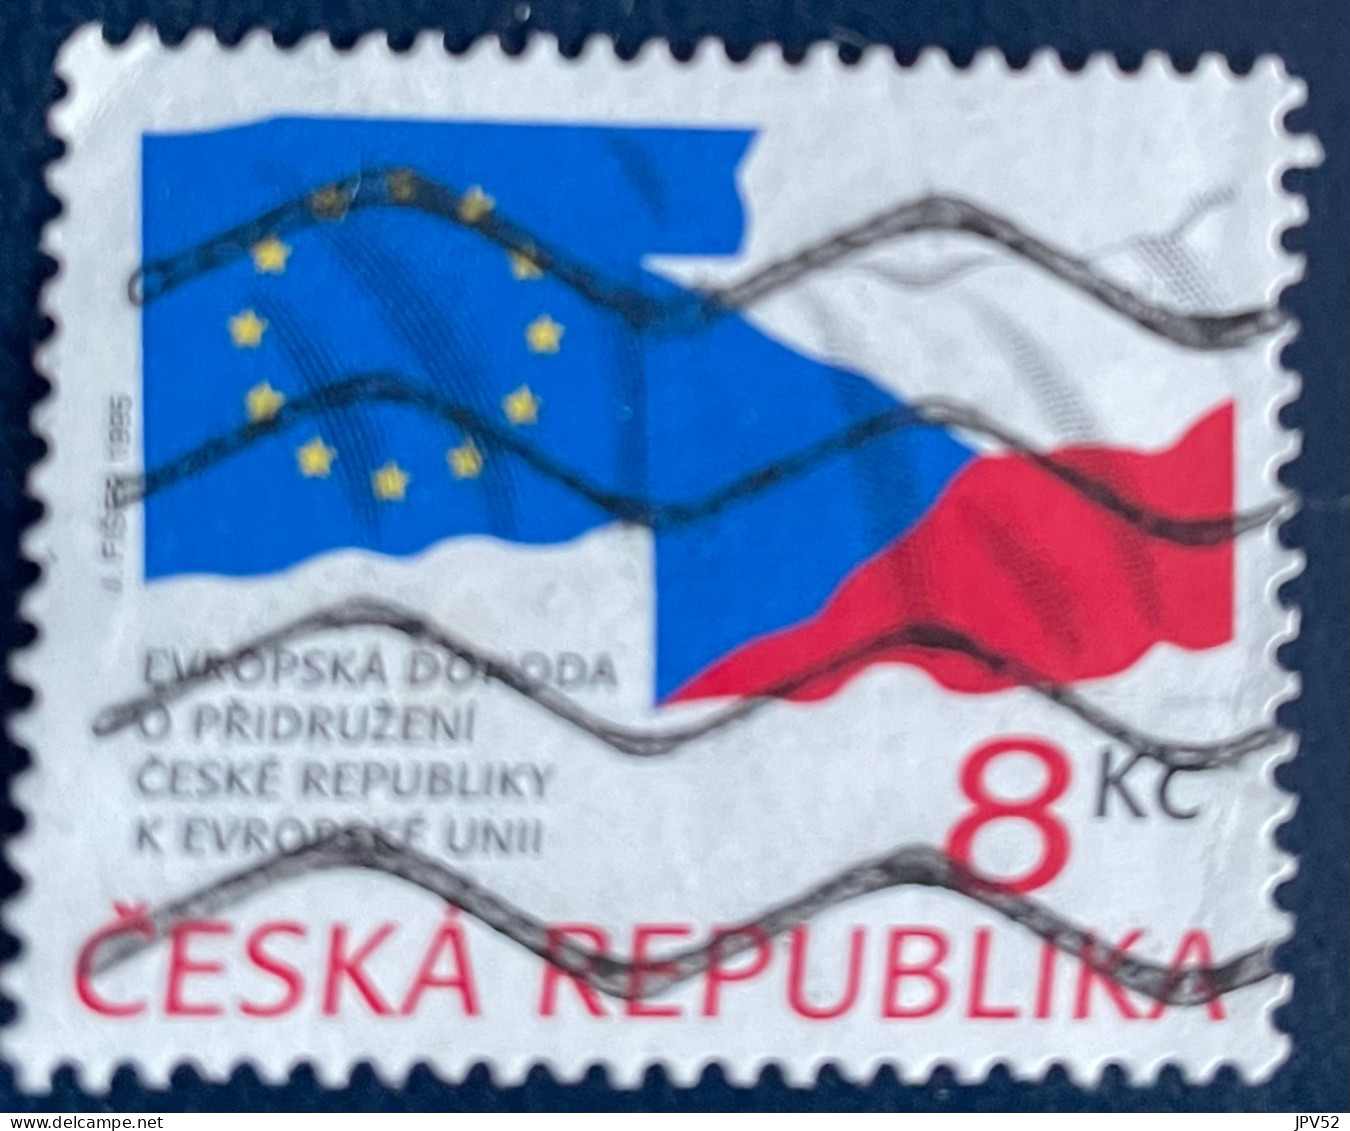 Ceska Republika - Tsjechië - C4/4 - 1995 - (°)used - Michel 62 - Tsjechië Lid Va EU - Usati